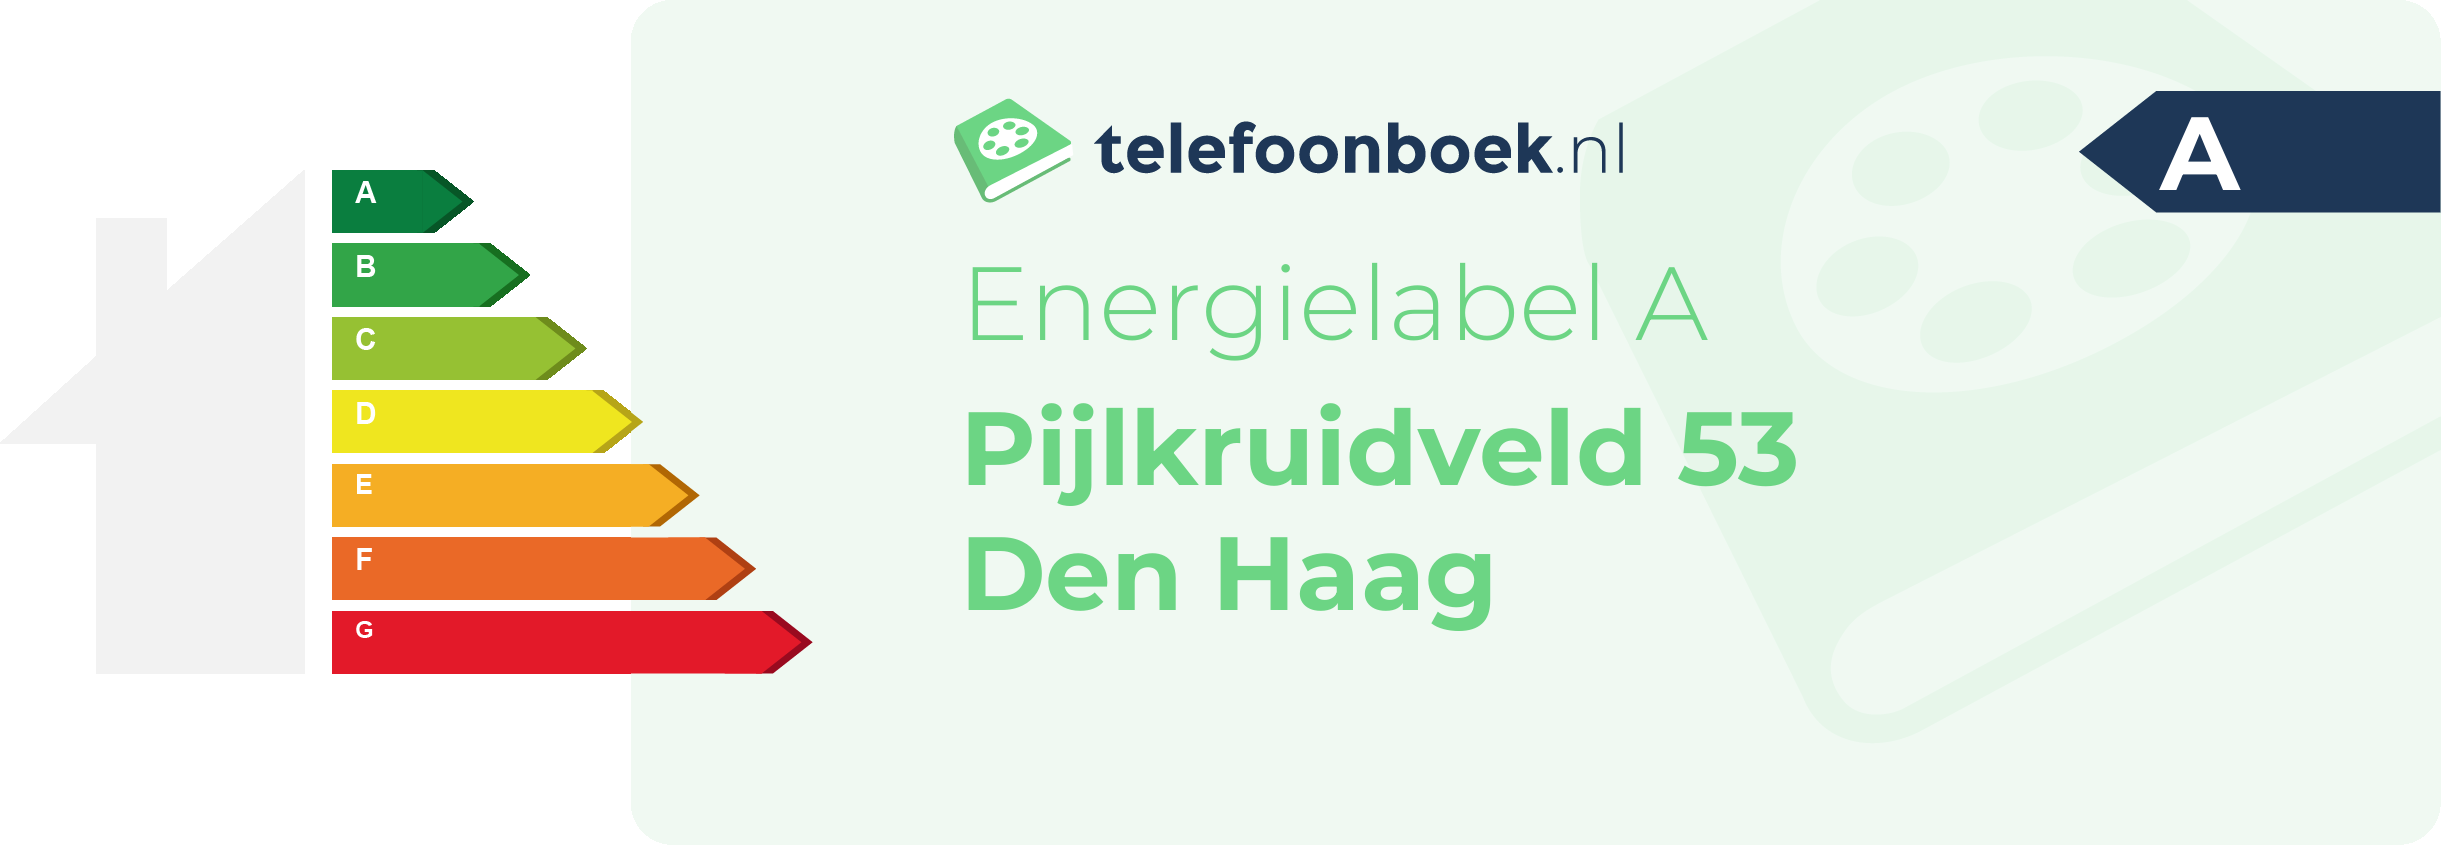 Energielabel Pijlkruidveld 53 Den Haag